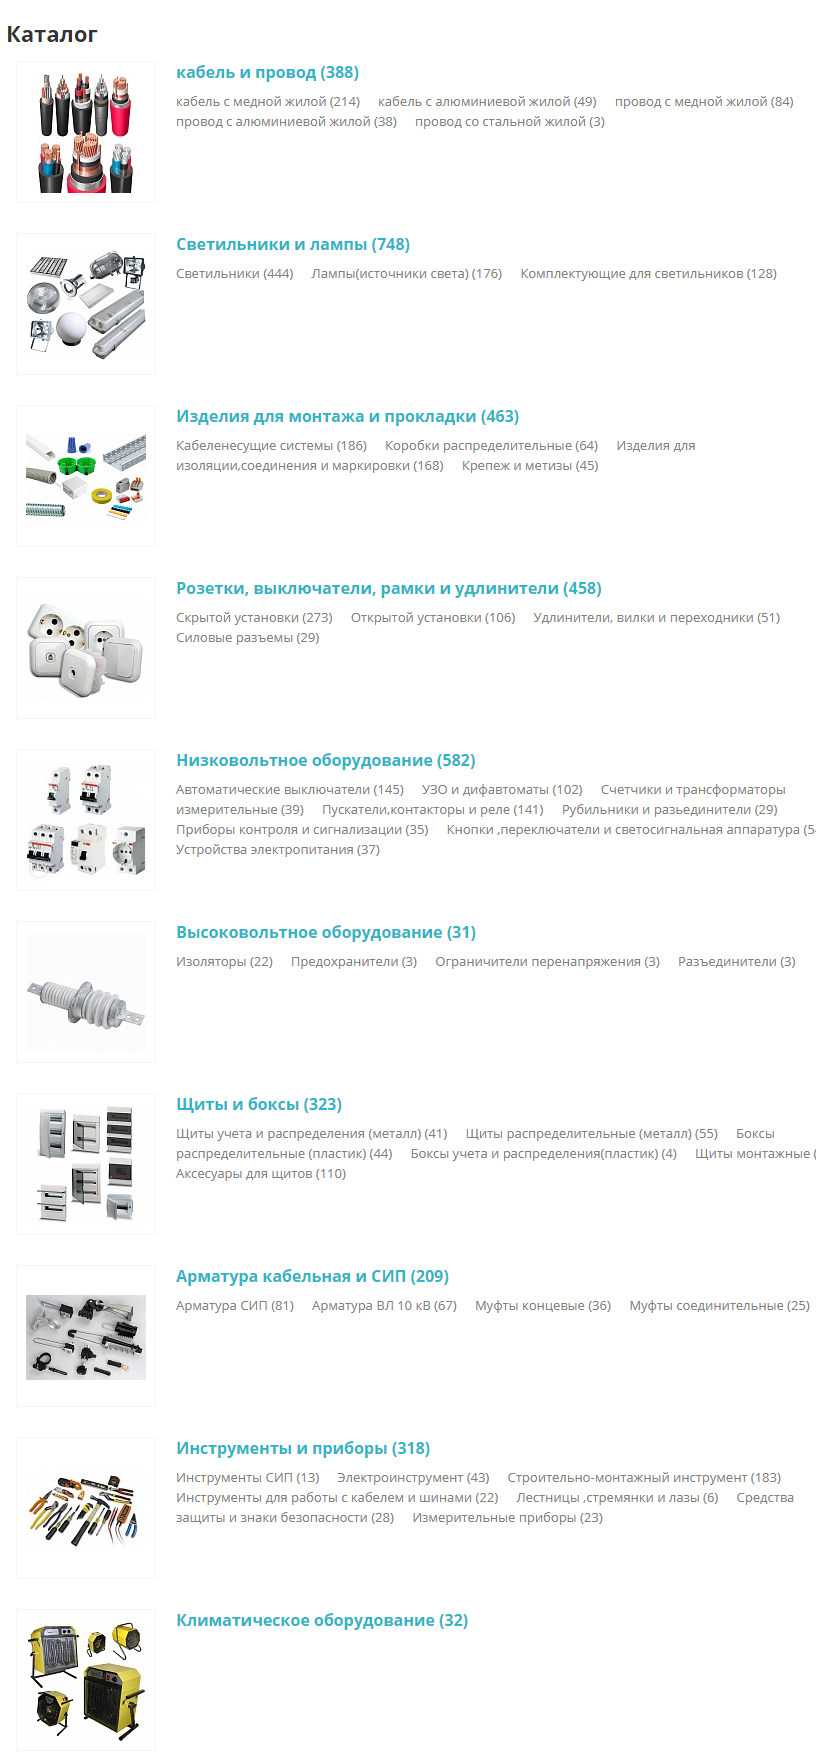 сибкомэлектро - интернет-магазин электротоваров